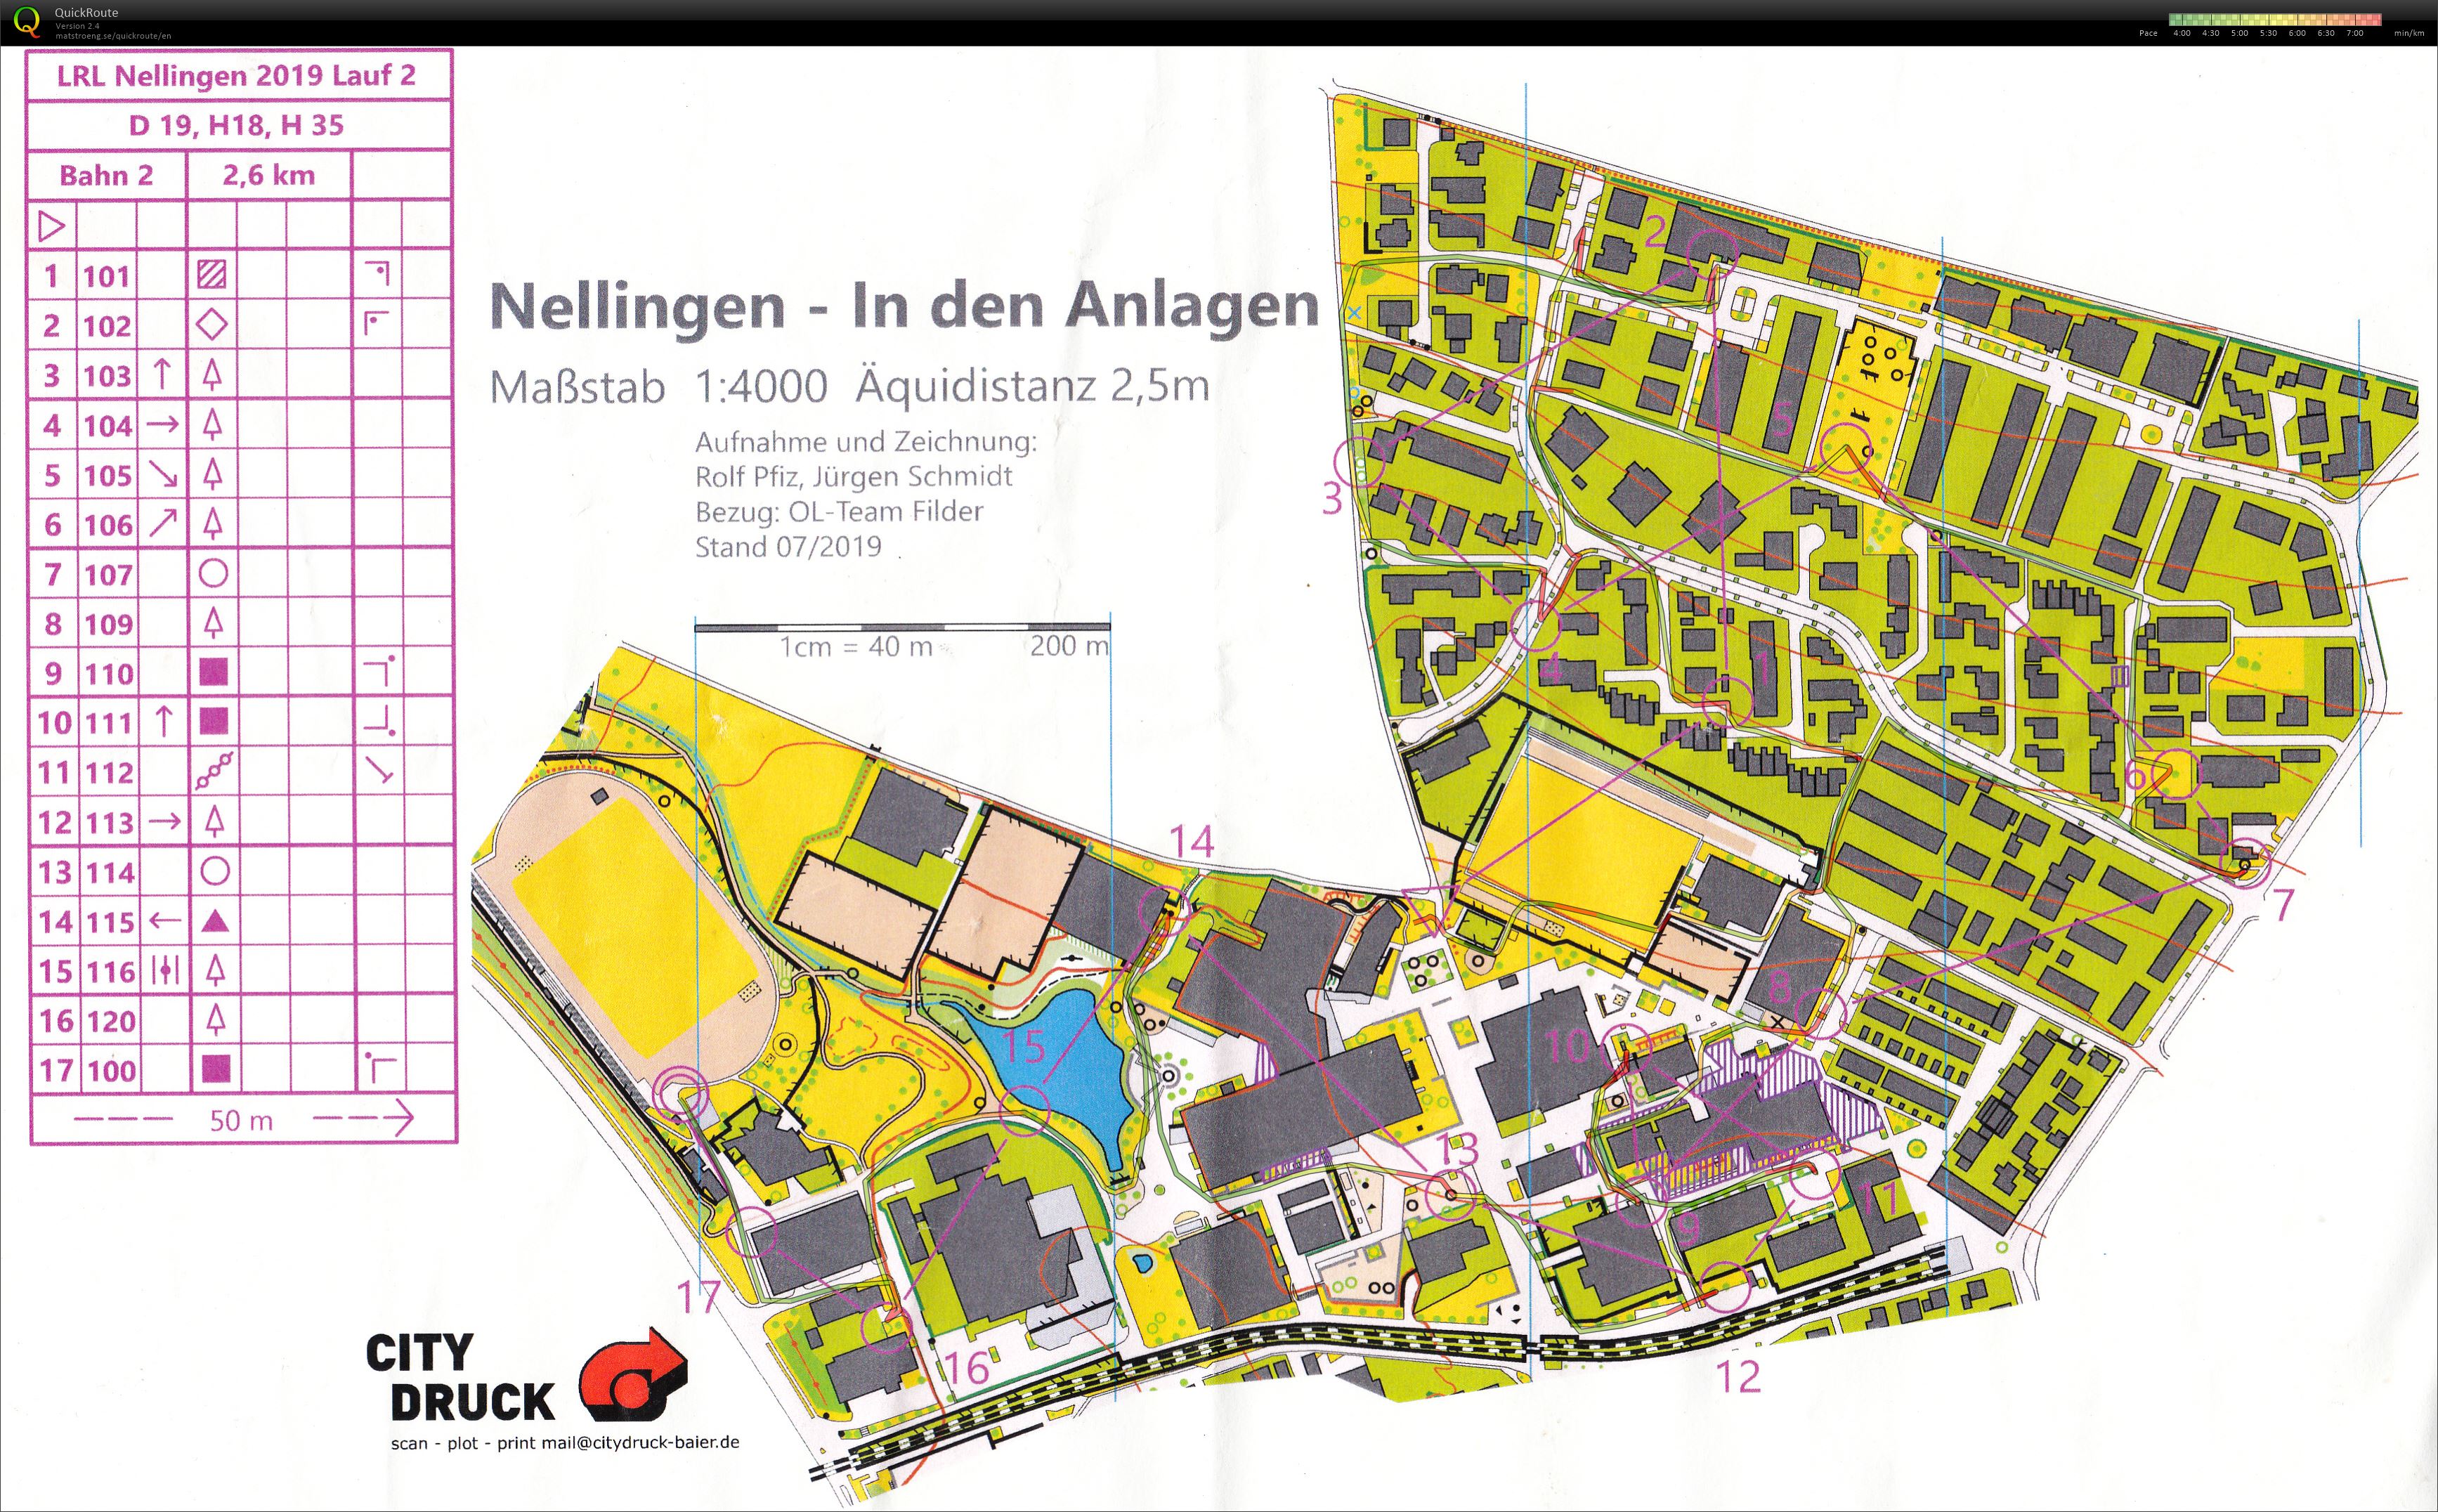 LRL Nellingen - 2 (20/07/2019)